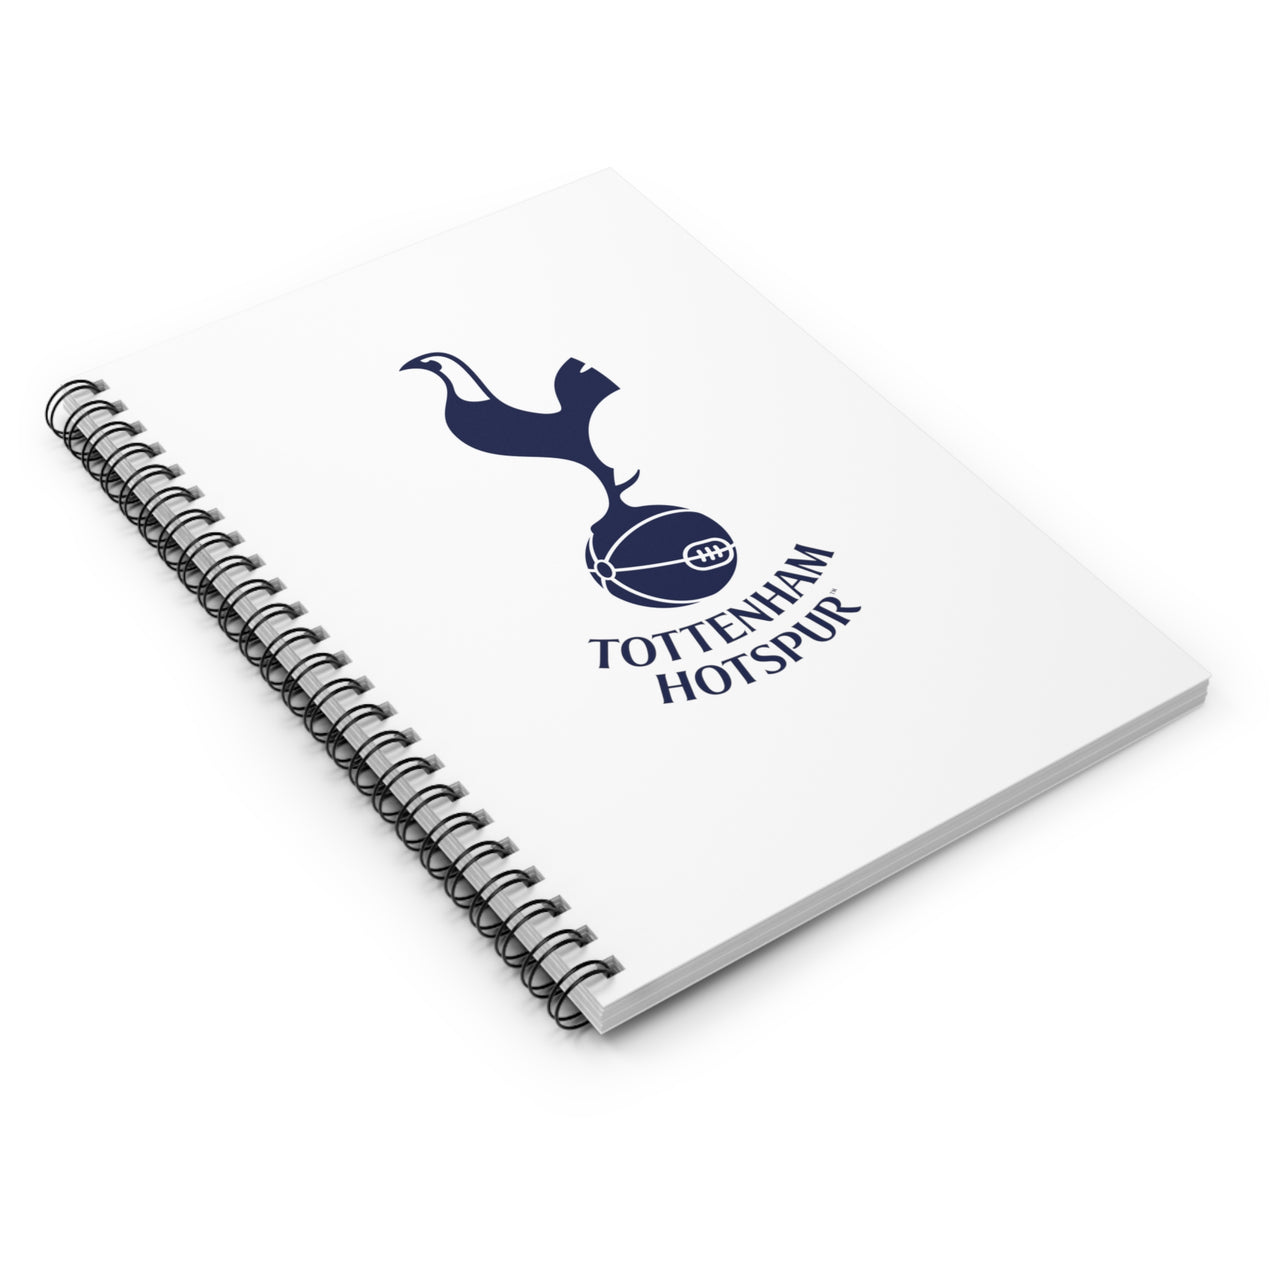 Tottenham Hotspurs Spiral Notebook - Ruled Line